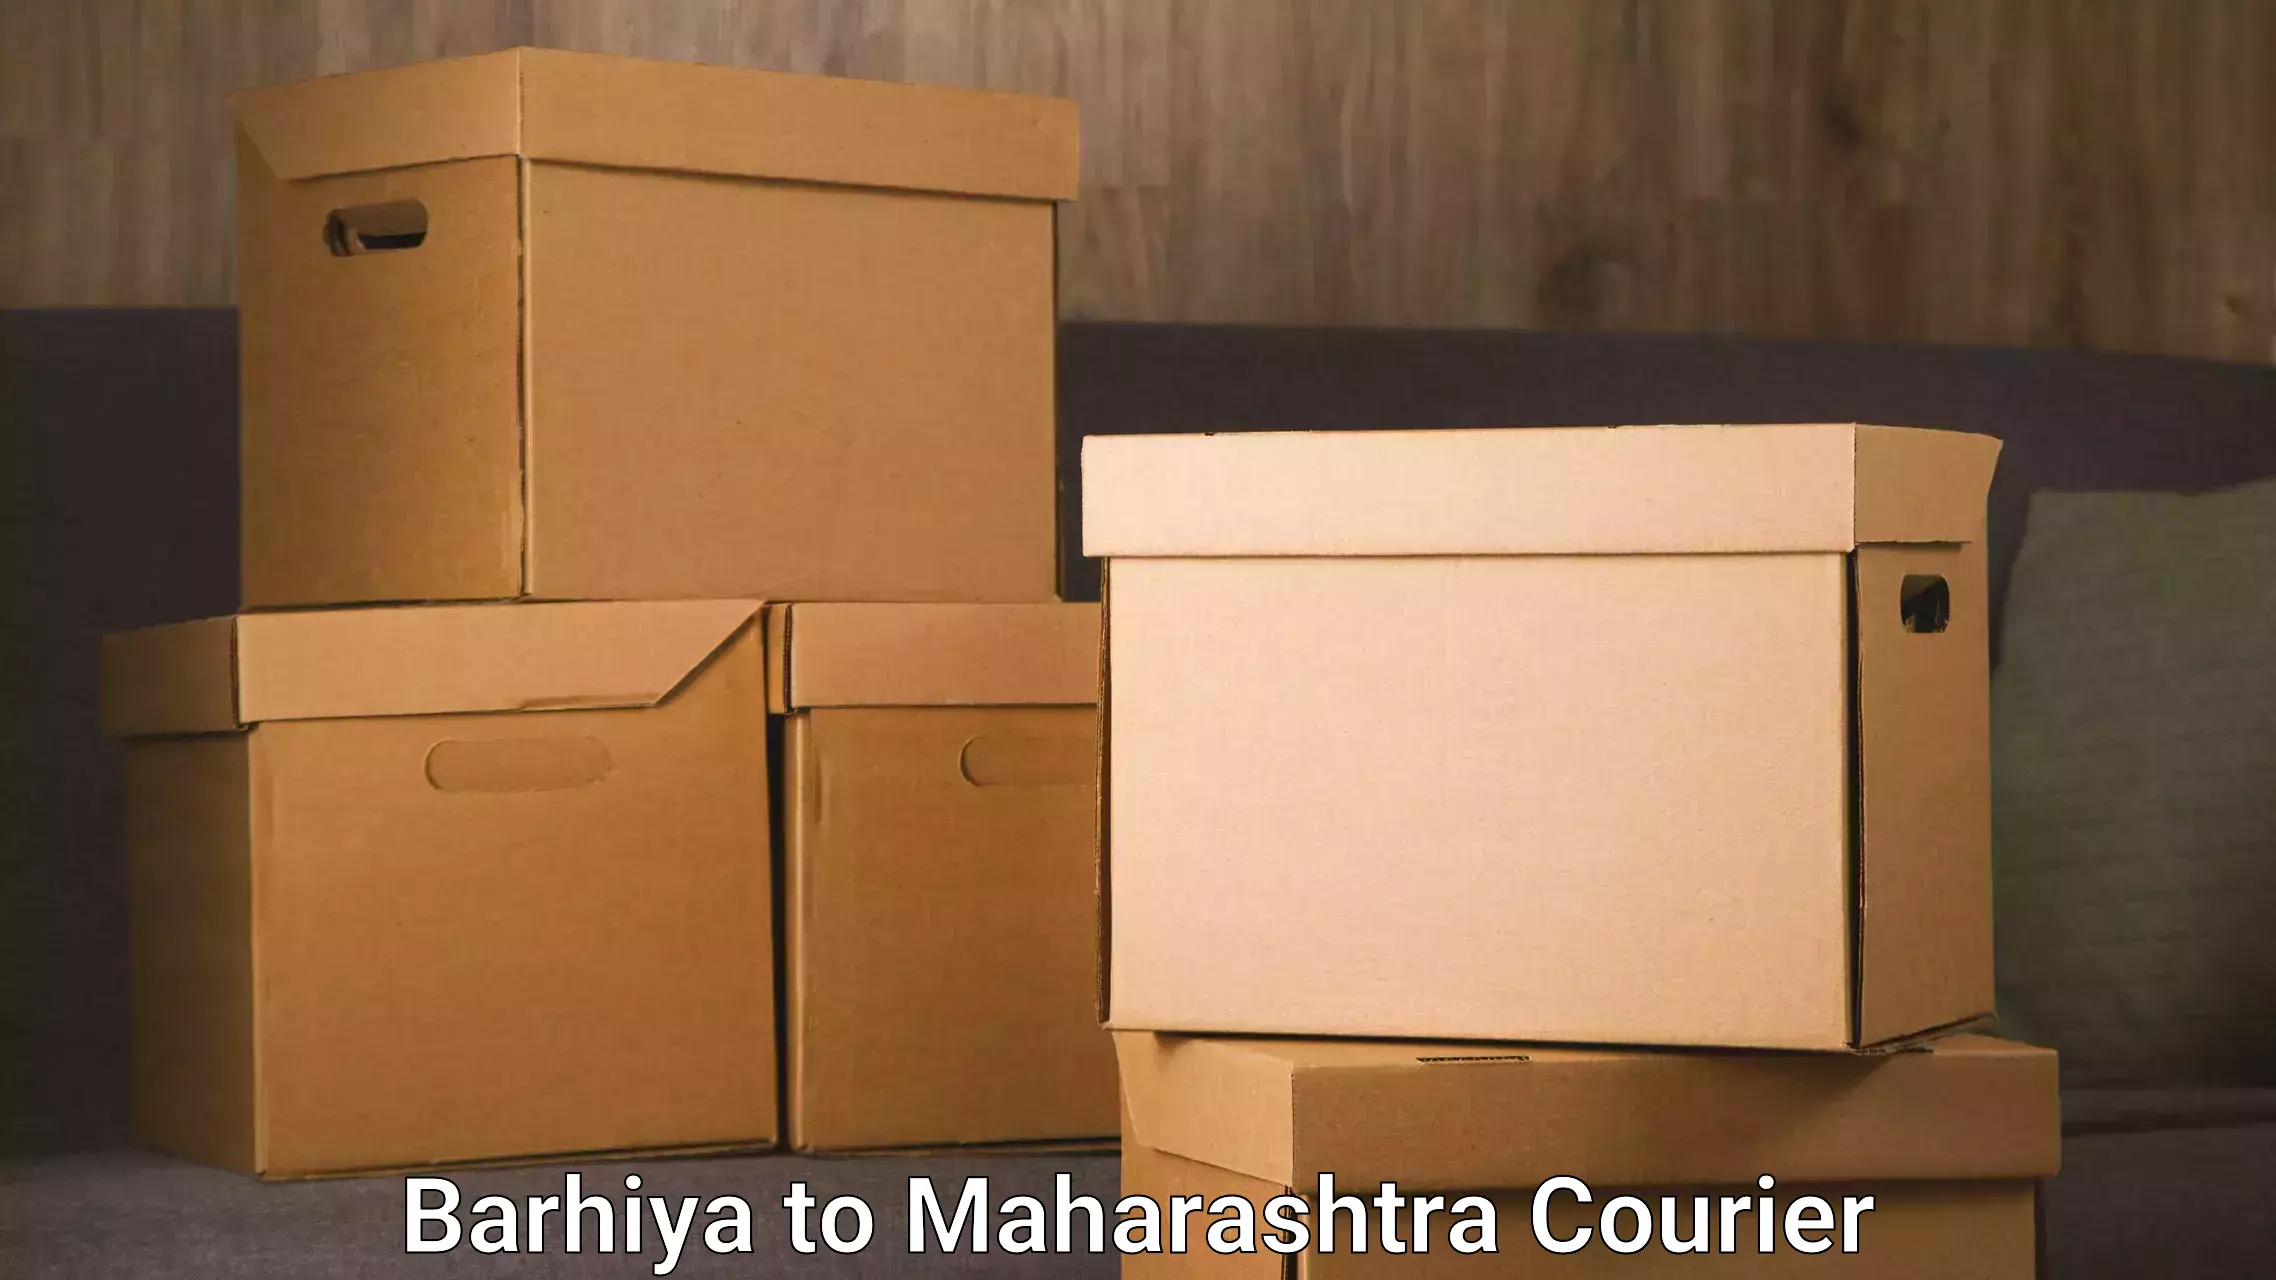 Quality relocation services Barhiya to Maharashtra